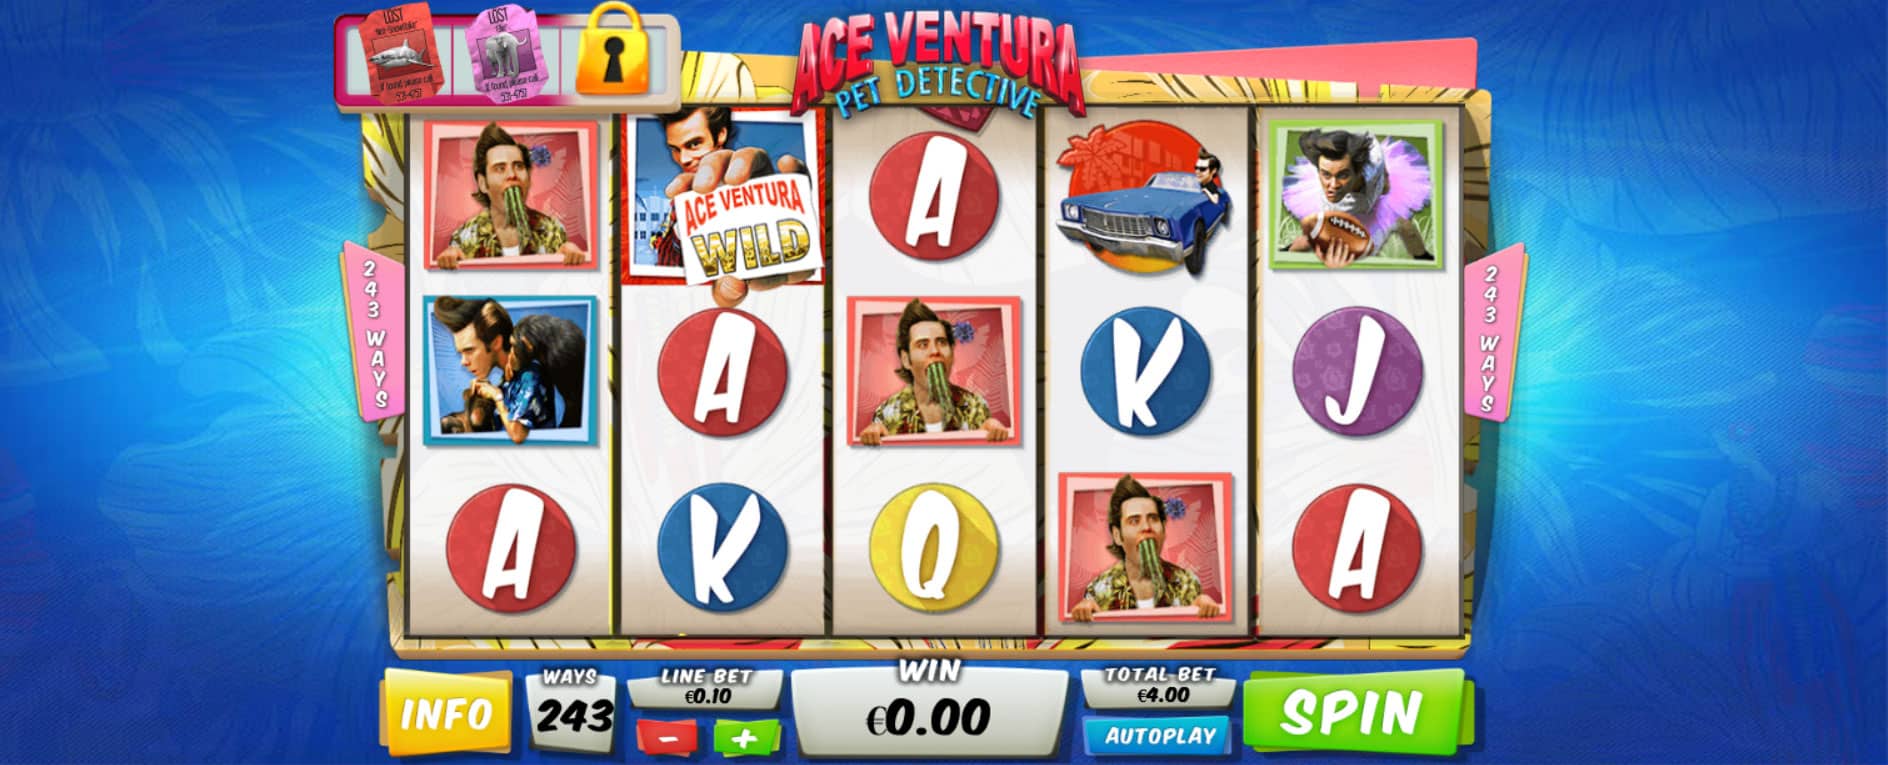 schermata del gioco slot online ace ventura